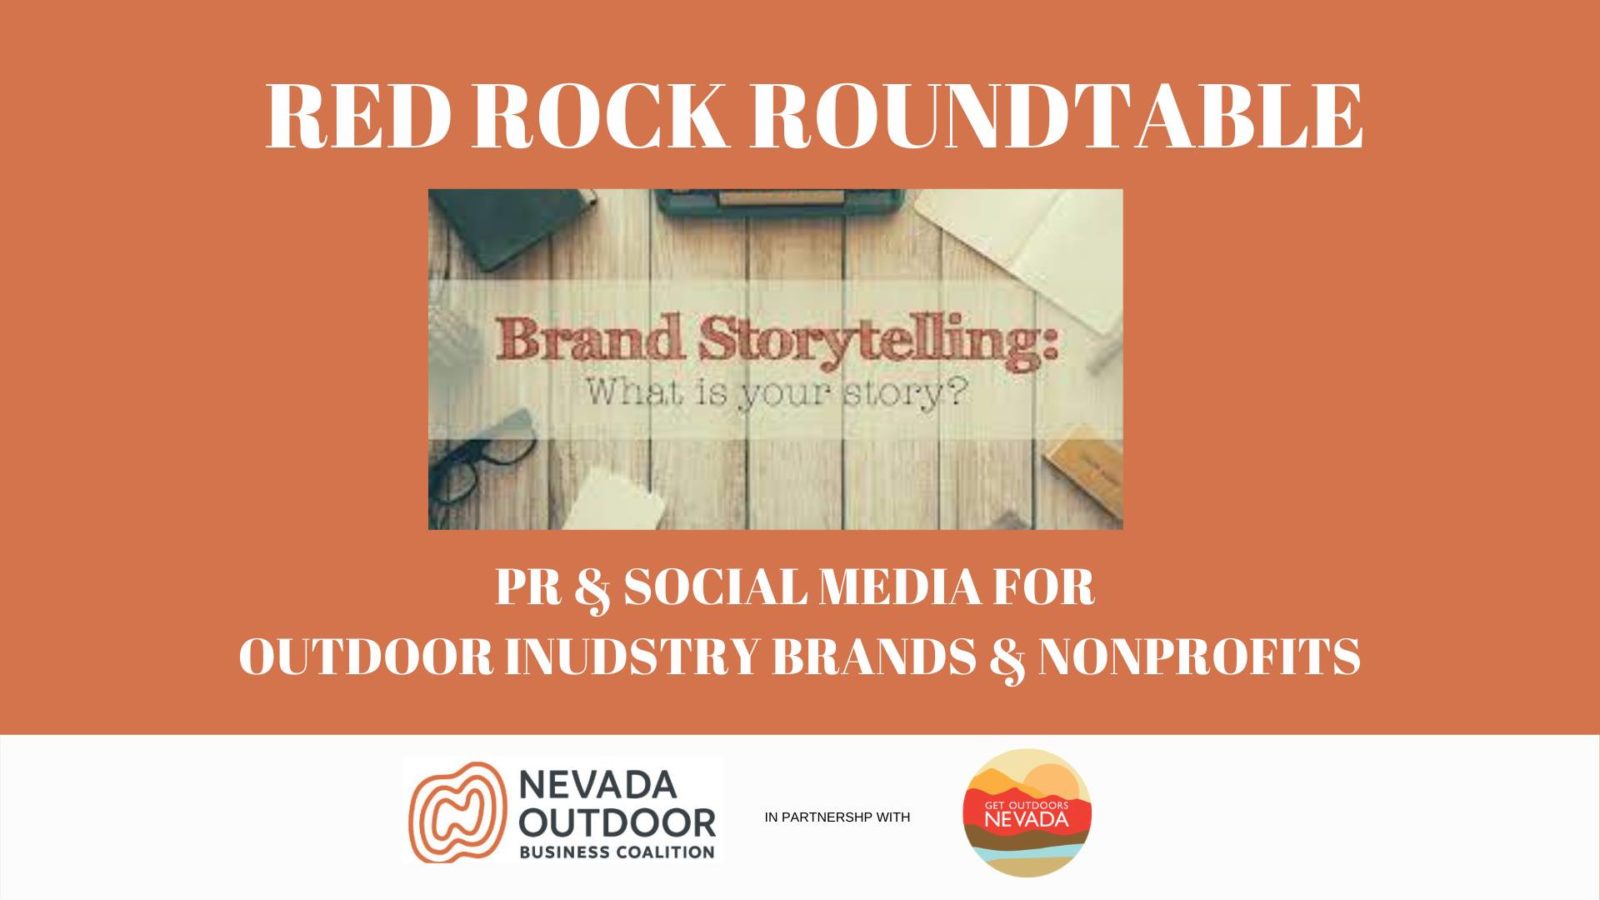 RRR_Brand Storytelling